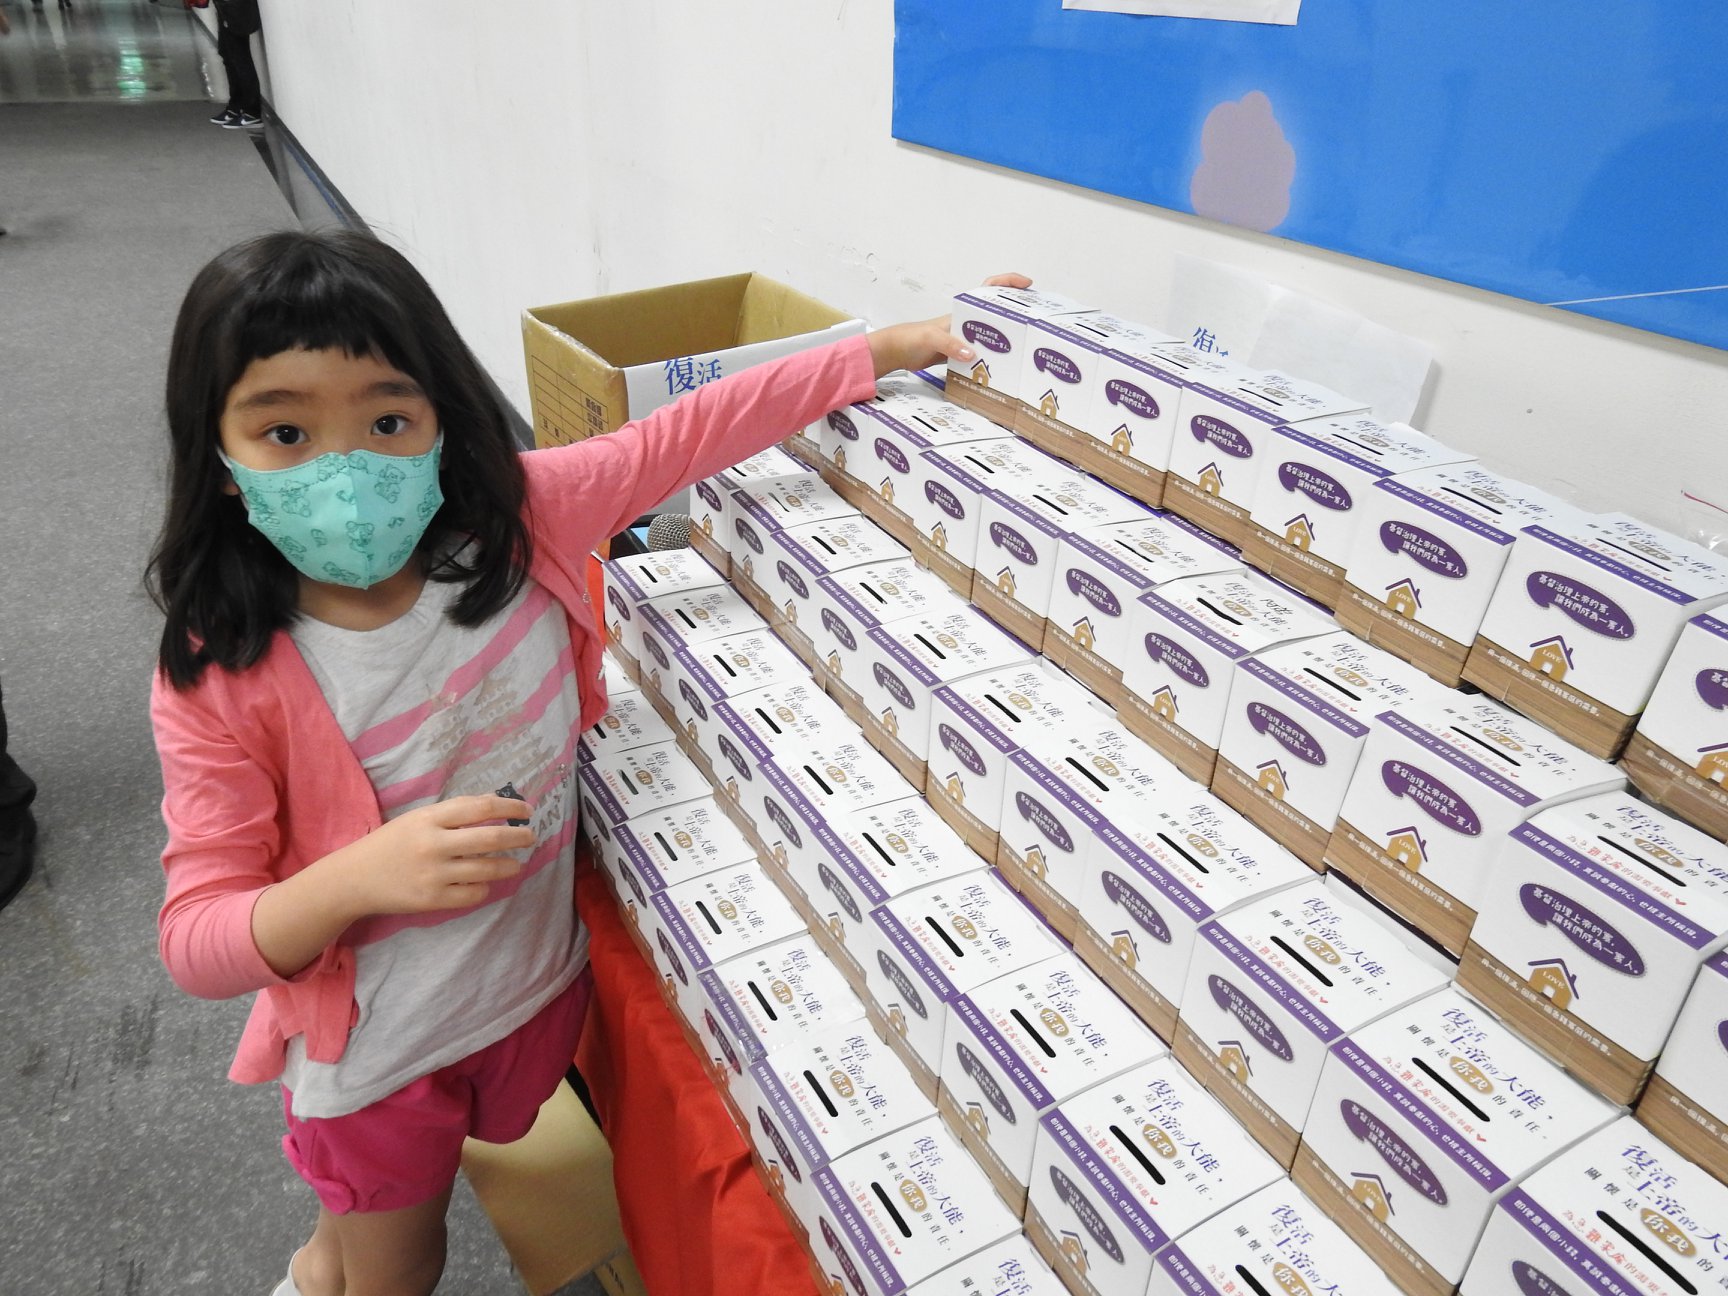 孩童也加入紙盒撲滿，一起幫助急難家庭。(圖/新竹市基督教聯合關懷協會提供)